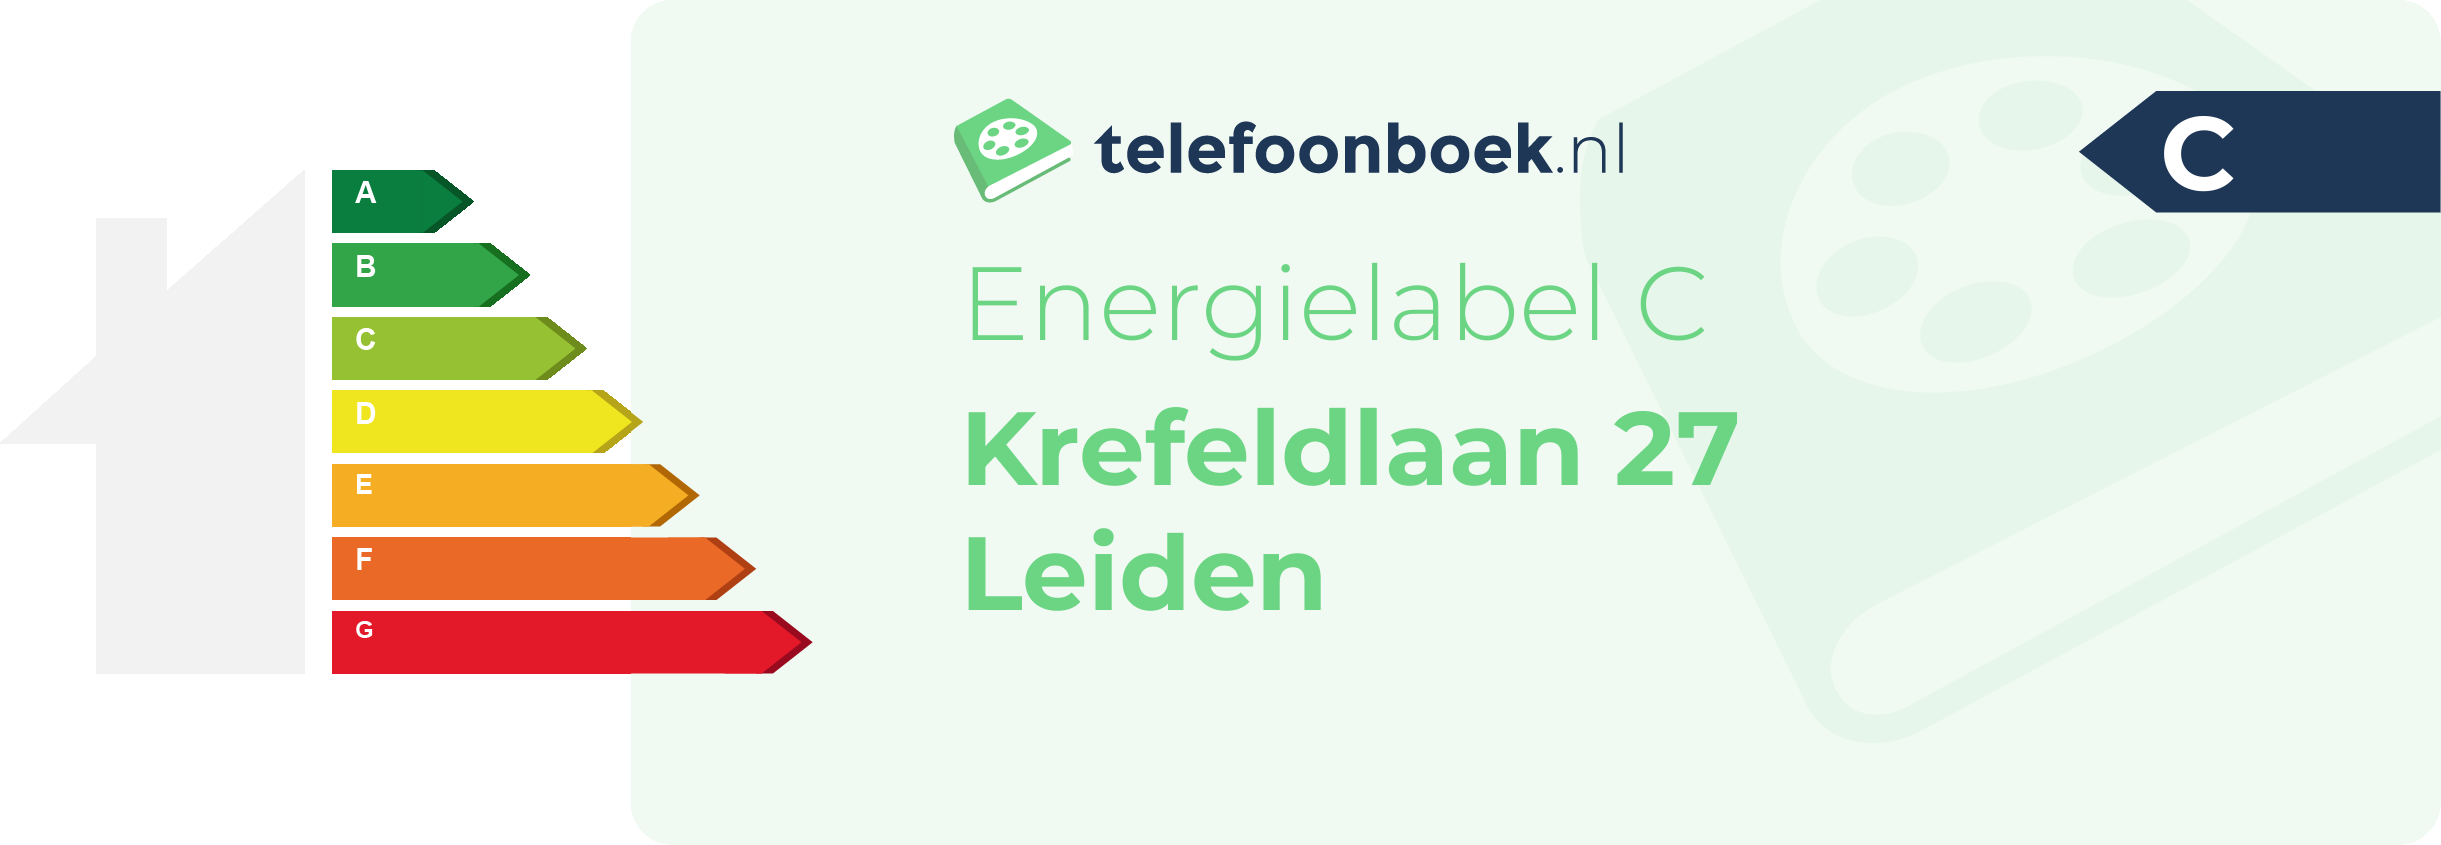 Energielabel Krefeldlaan 27 Leiden